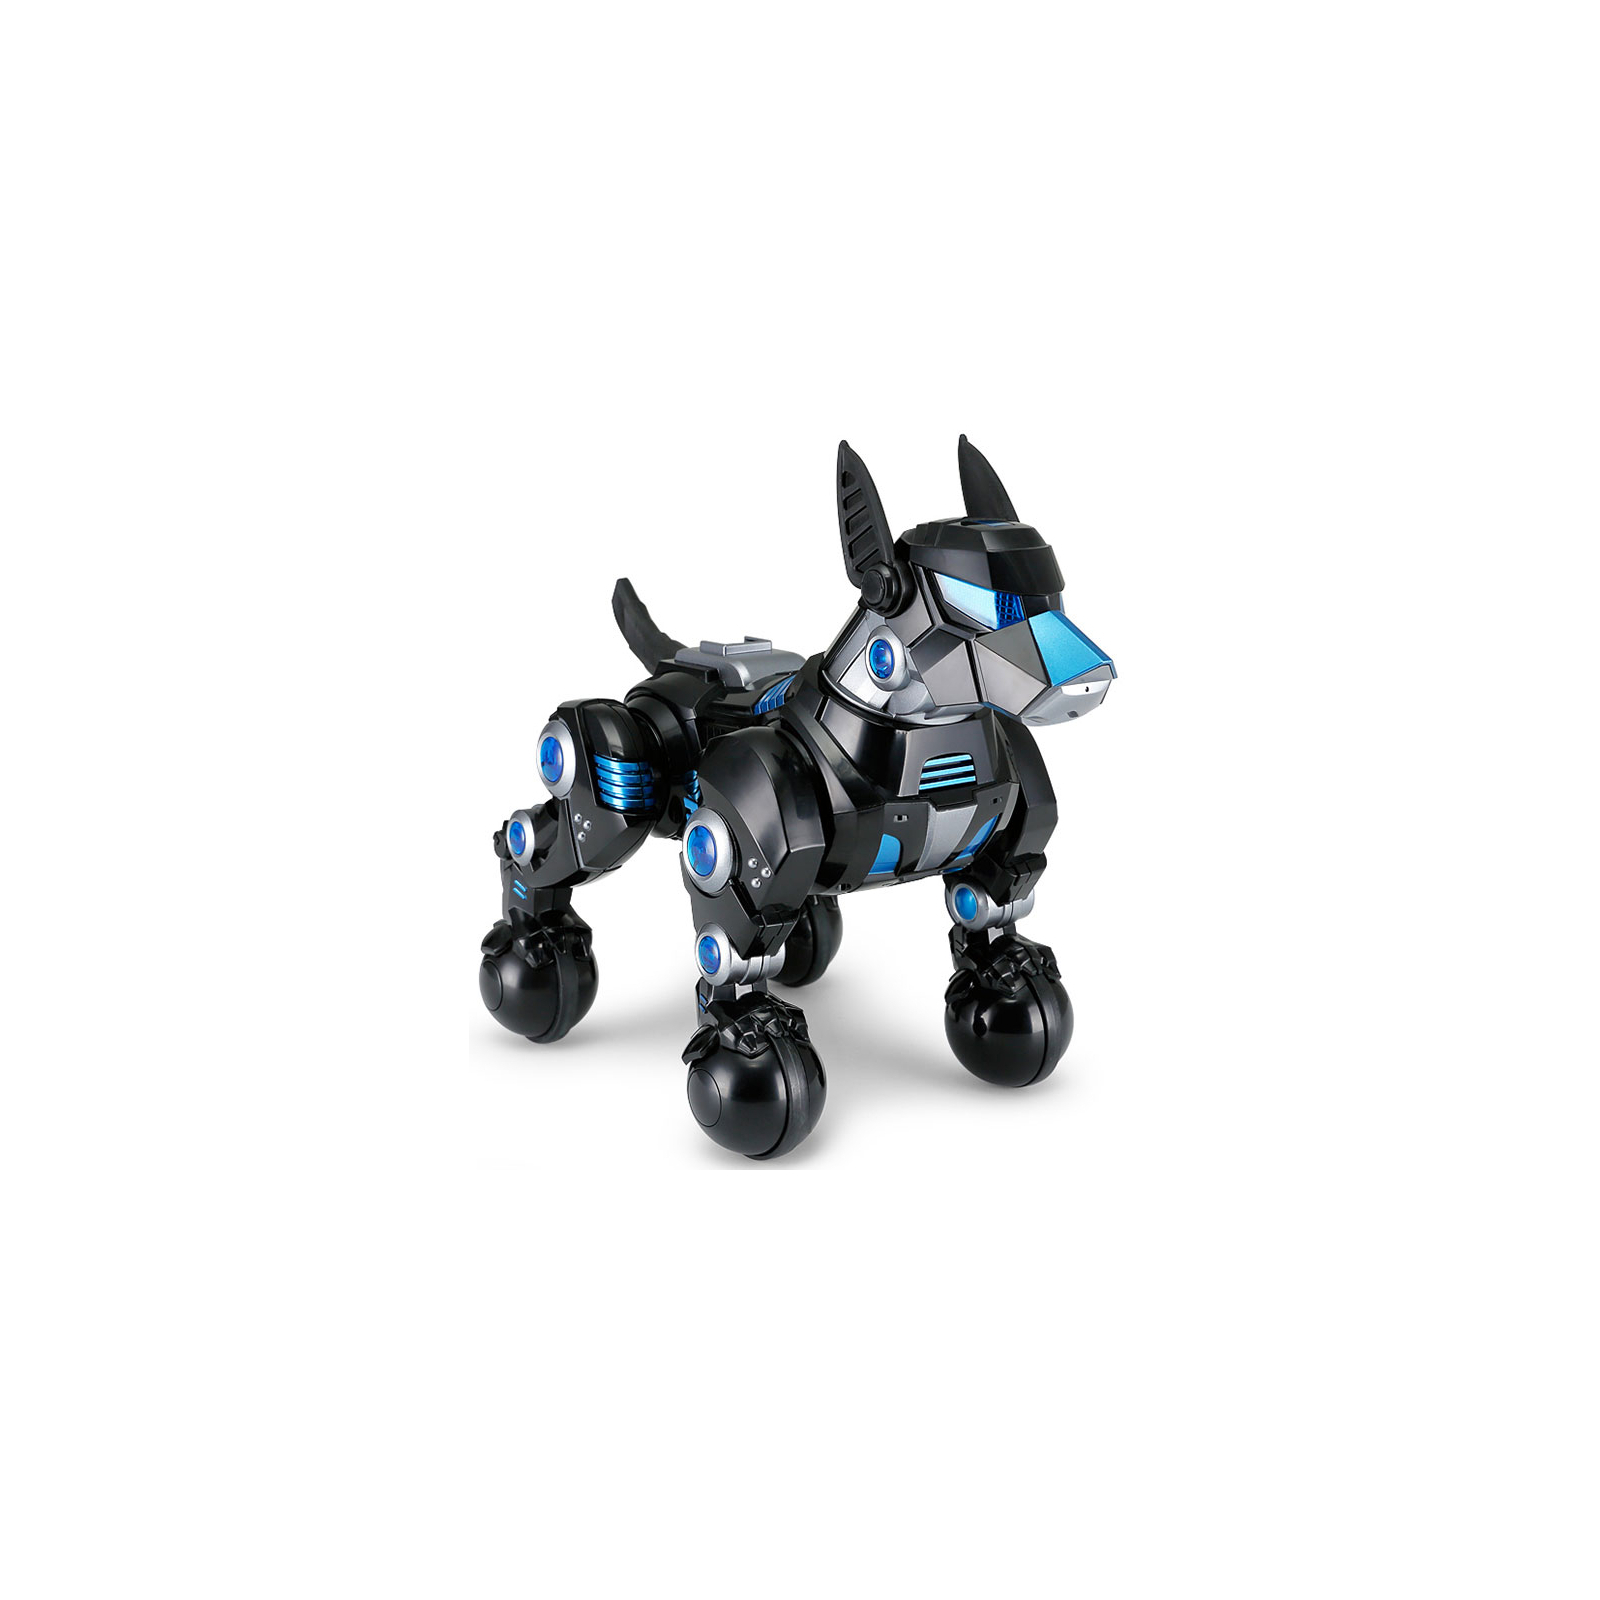 Інтерактивна іграшка Rastar Робот DOGO пес чорний (77960 black) зображення 2